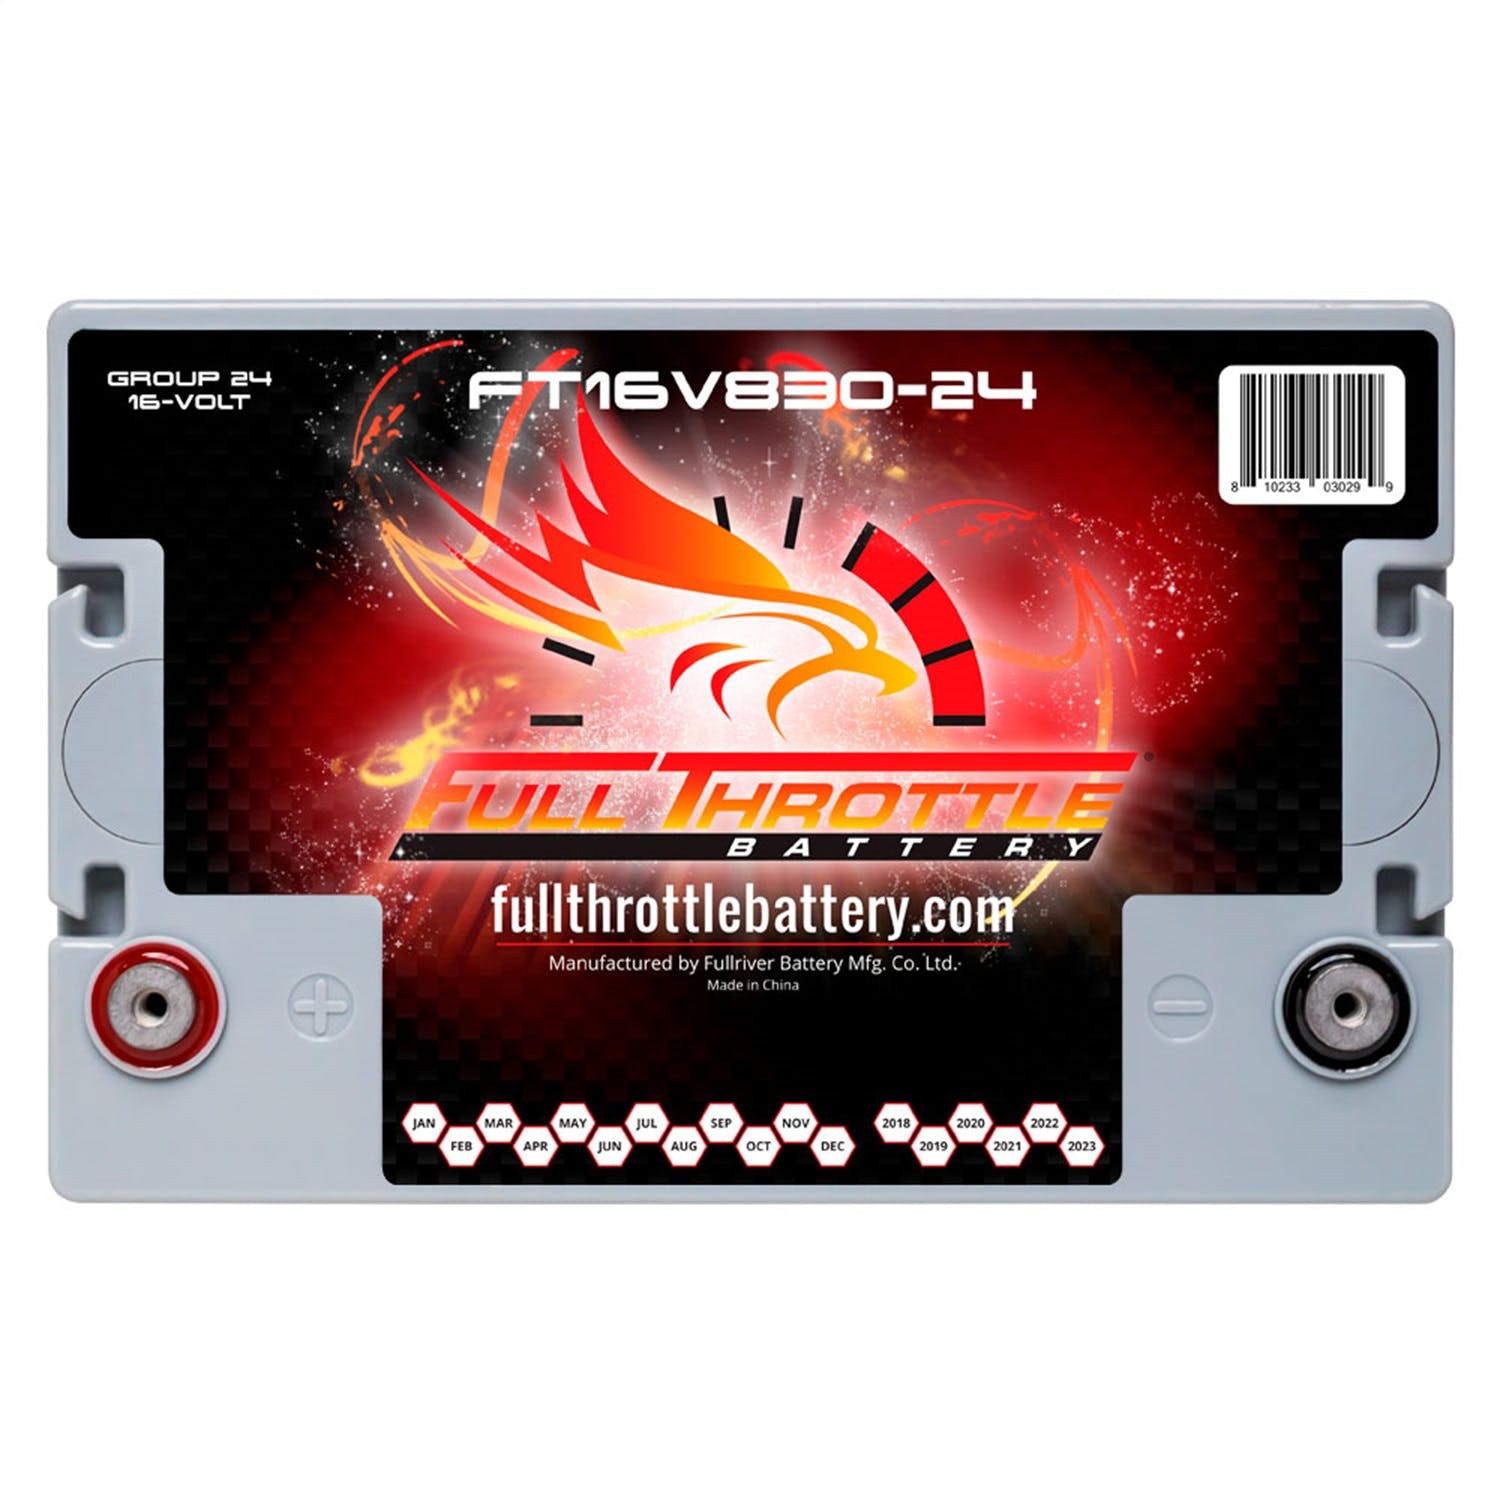 Fullriver Battery FT16V830-24 Full Throttle 16V Automotive Battery